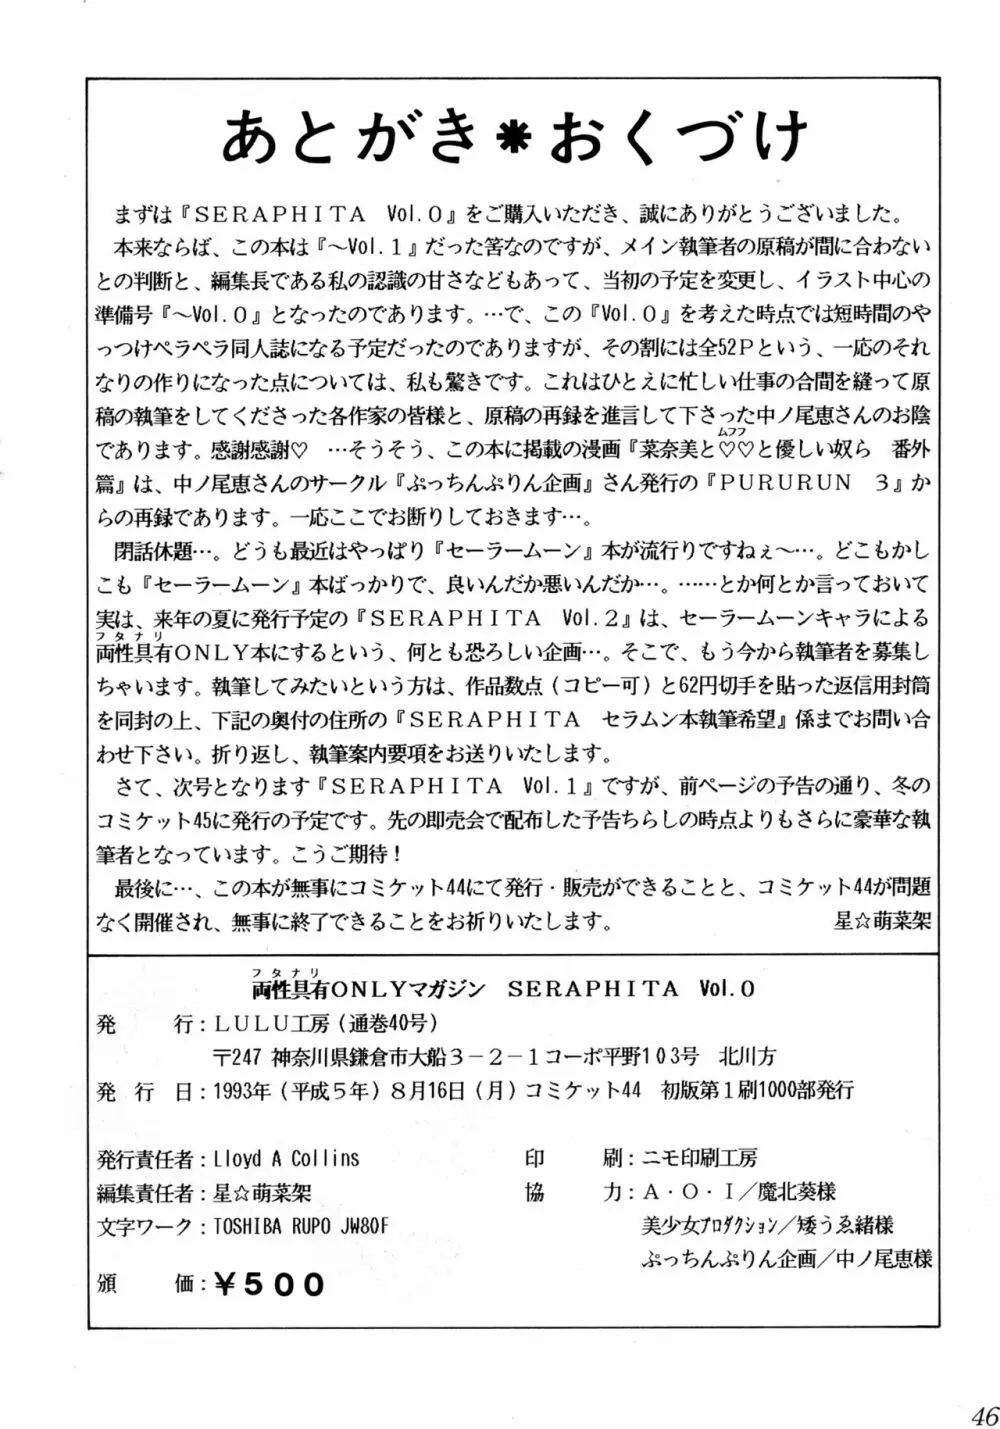 両性具有ONLY マガジン SERAPHITA Vol. 0 48ページ